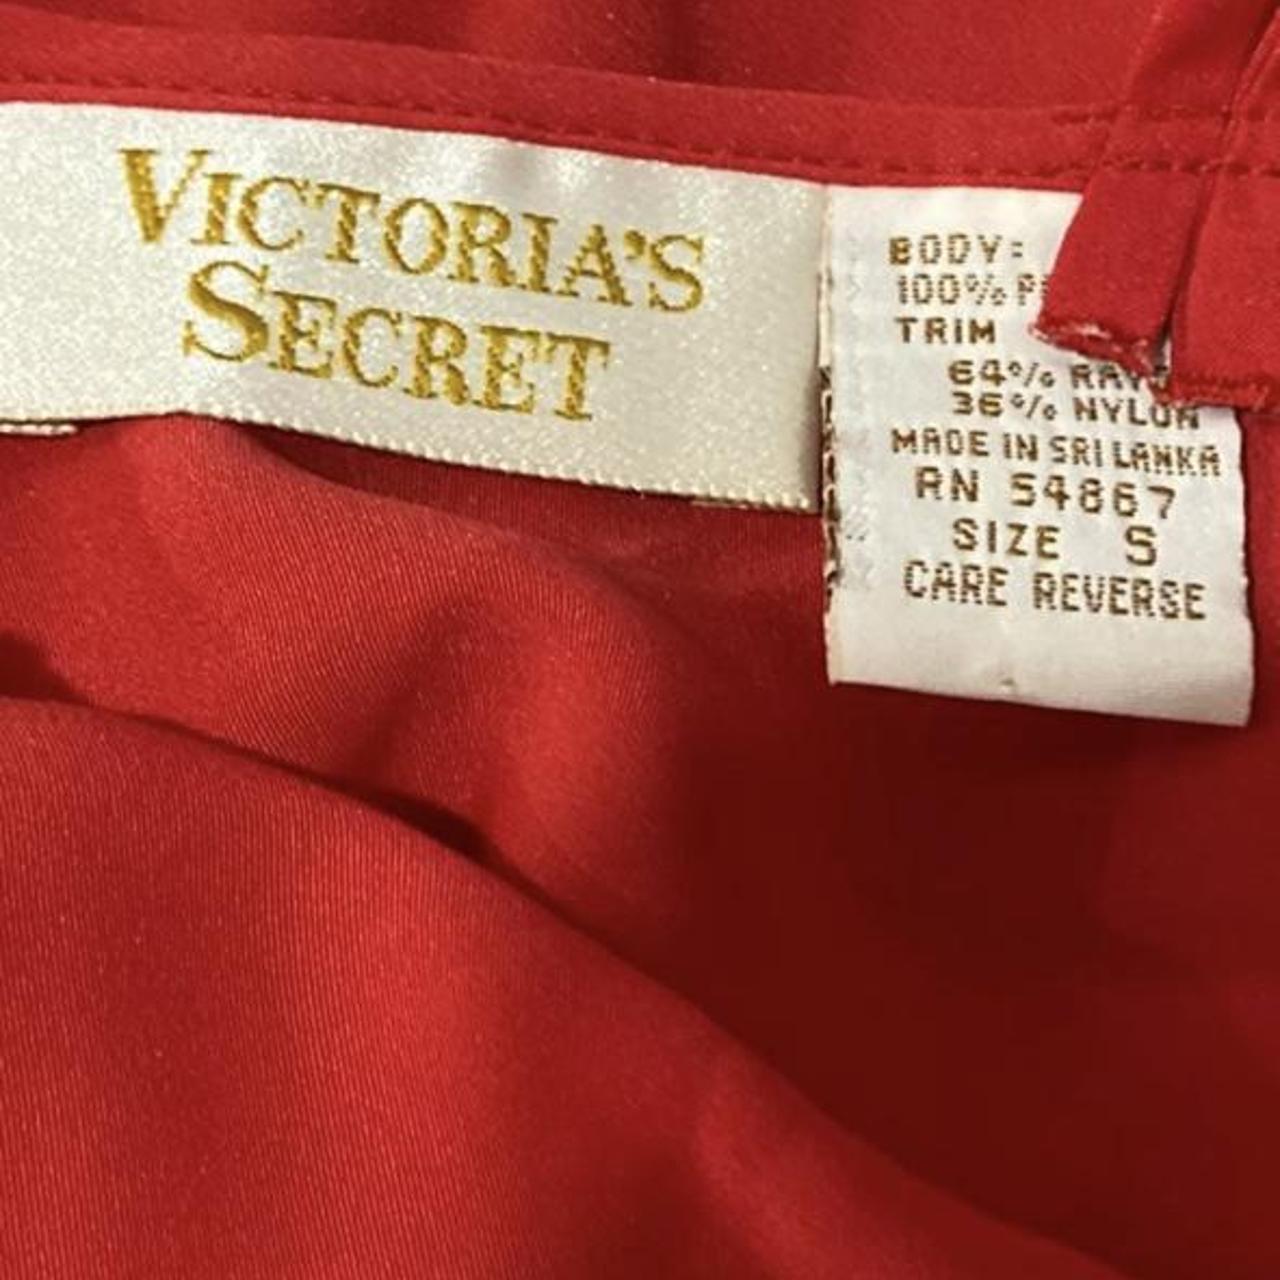 Victoria’s Secret vintage red lace slip... - Depop